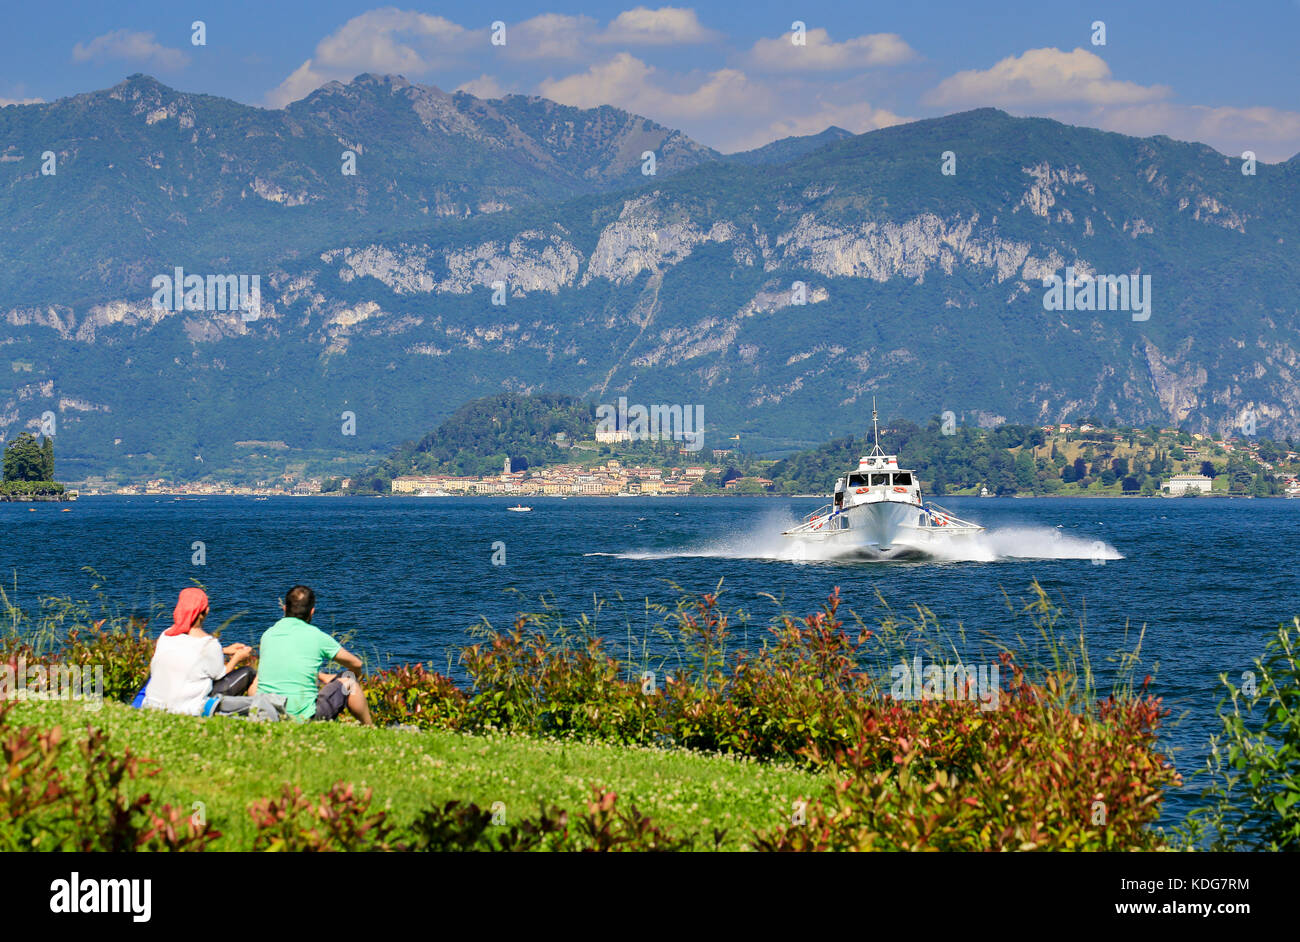 Paar am Ufer beobachten schnelle Tragflügelboot Passagierschiff von Bellagio am Comer See in Italien. Stockfoto